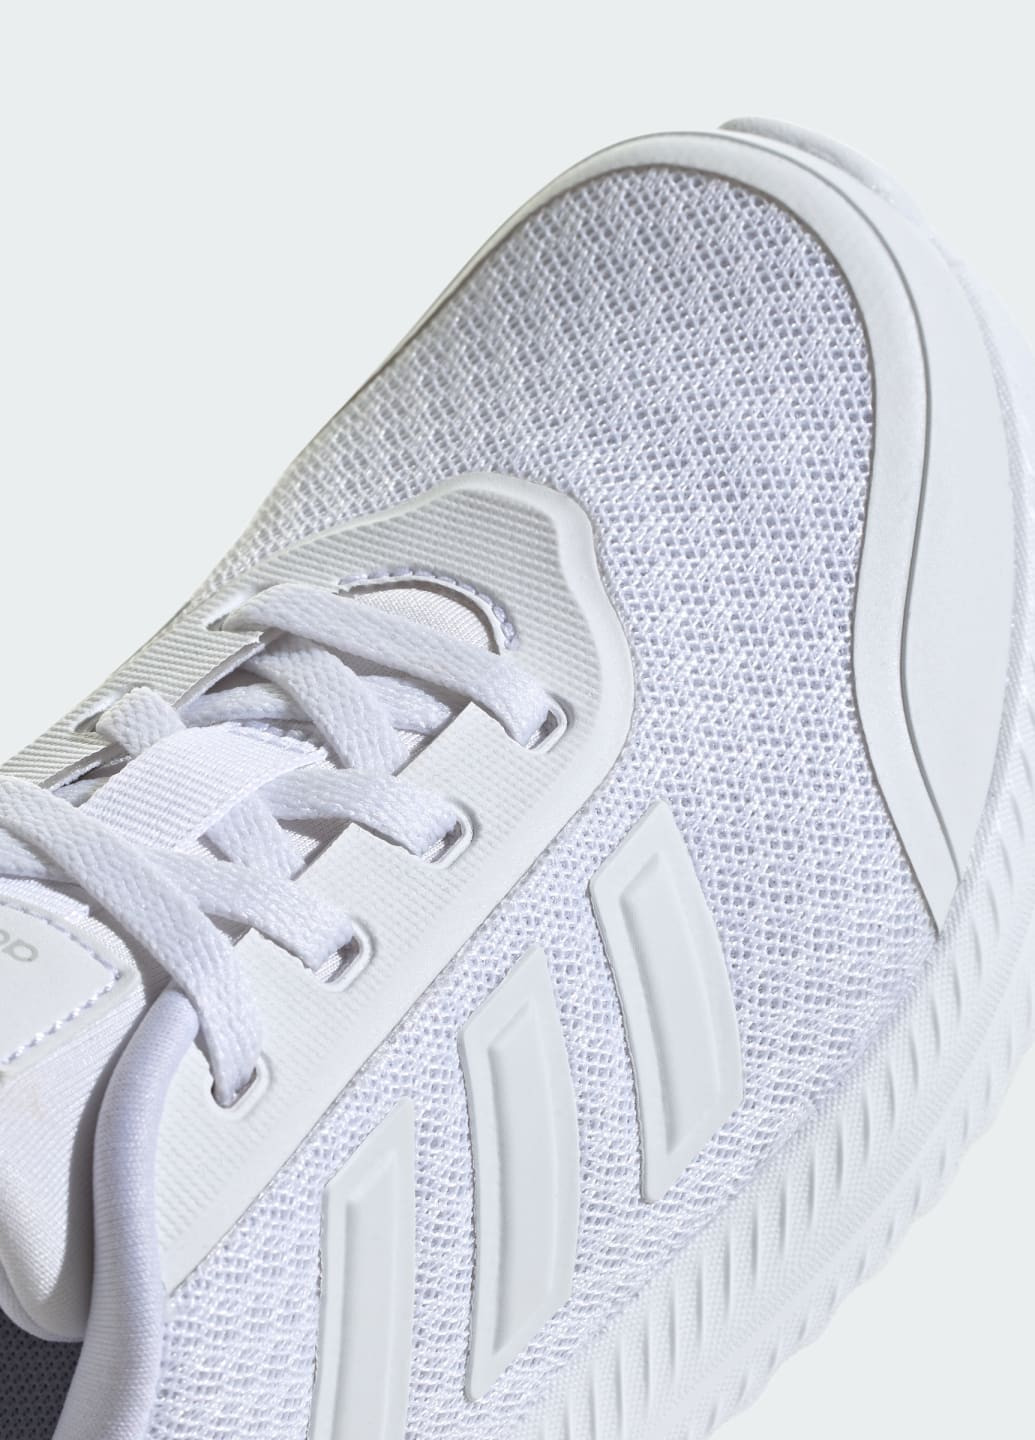 Белые всесезонные кроссовки x_plr kids adidas